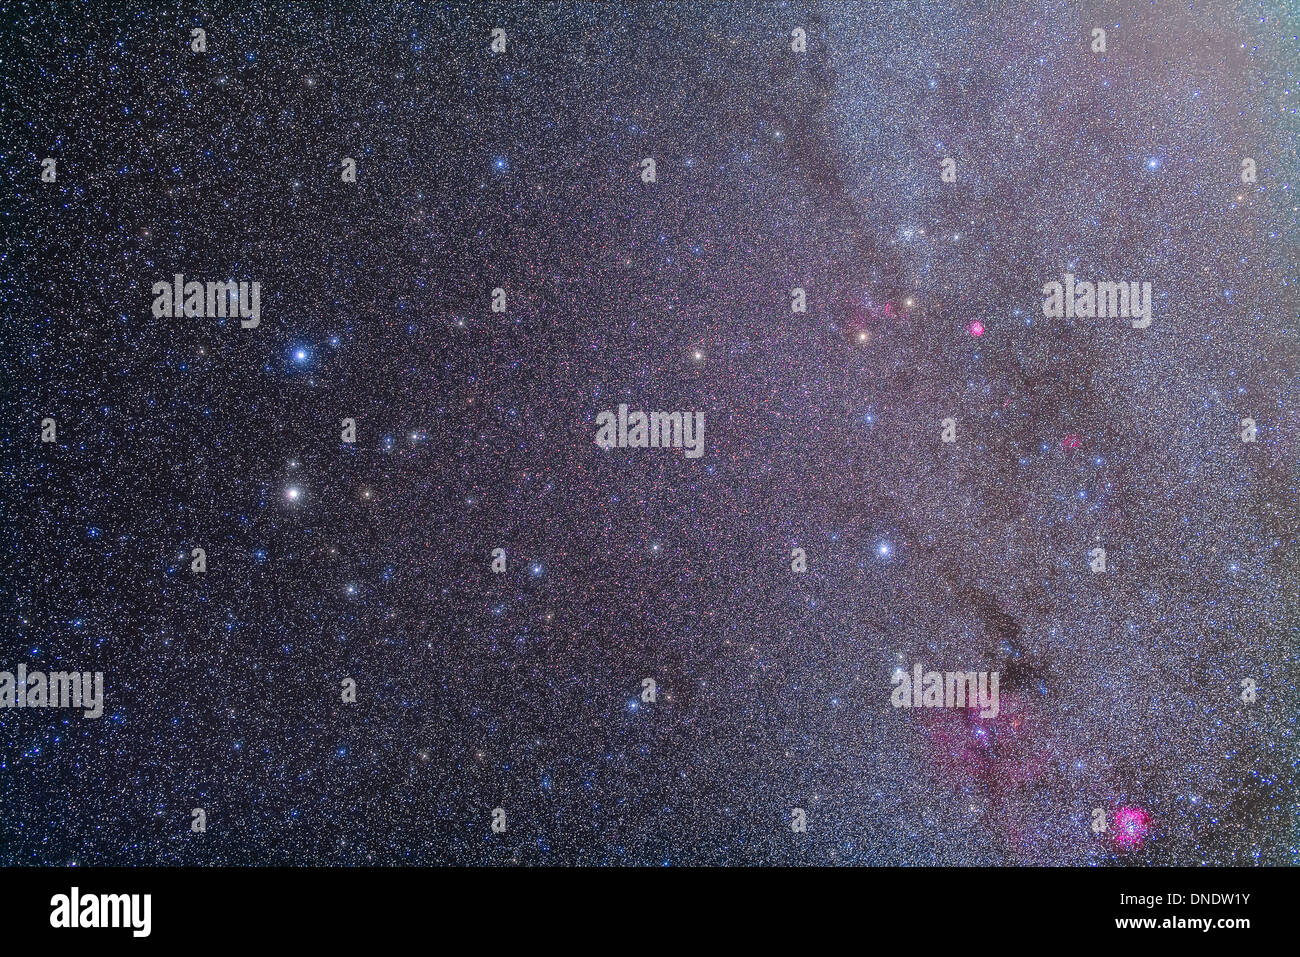 Vue grand champ de la constellation Gemini avec de nombreux objets du ciel profond visible. Banque D'Images